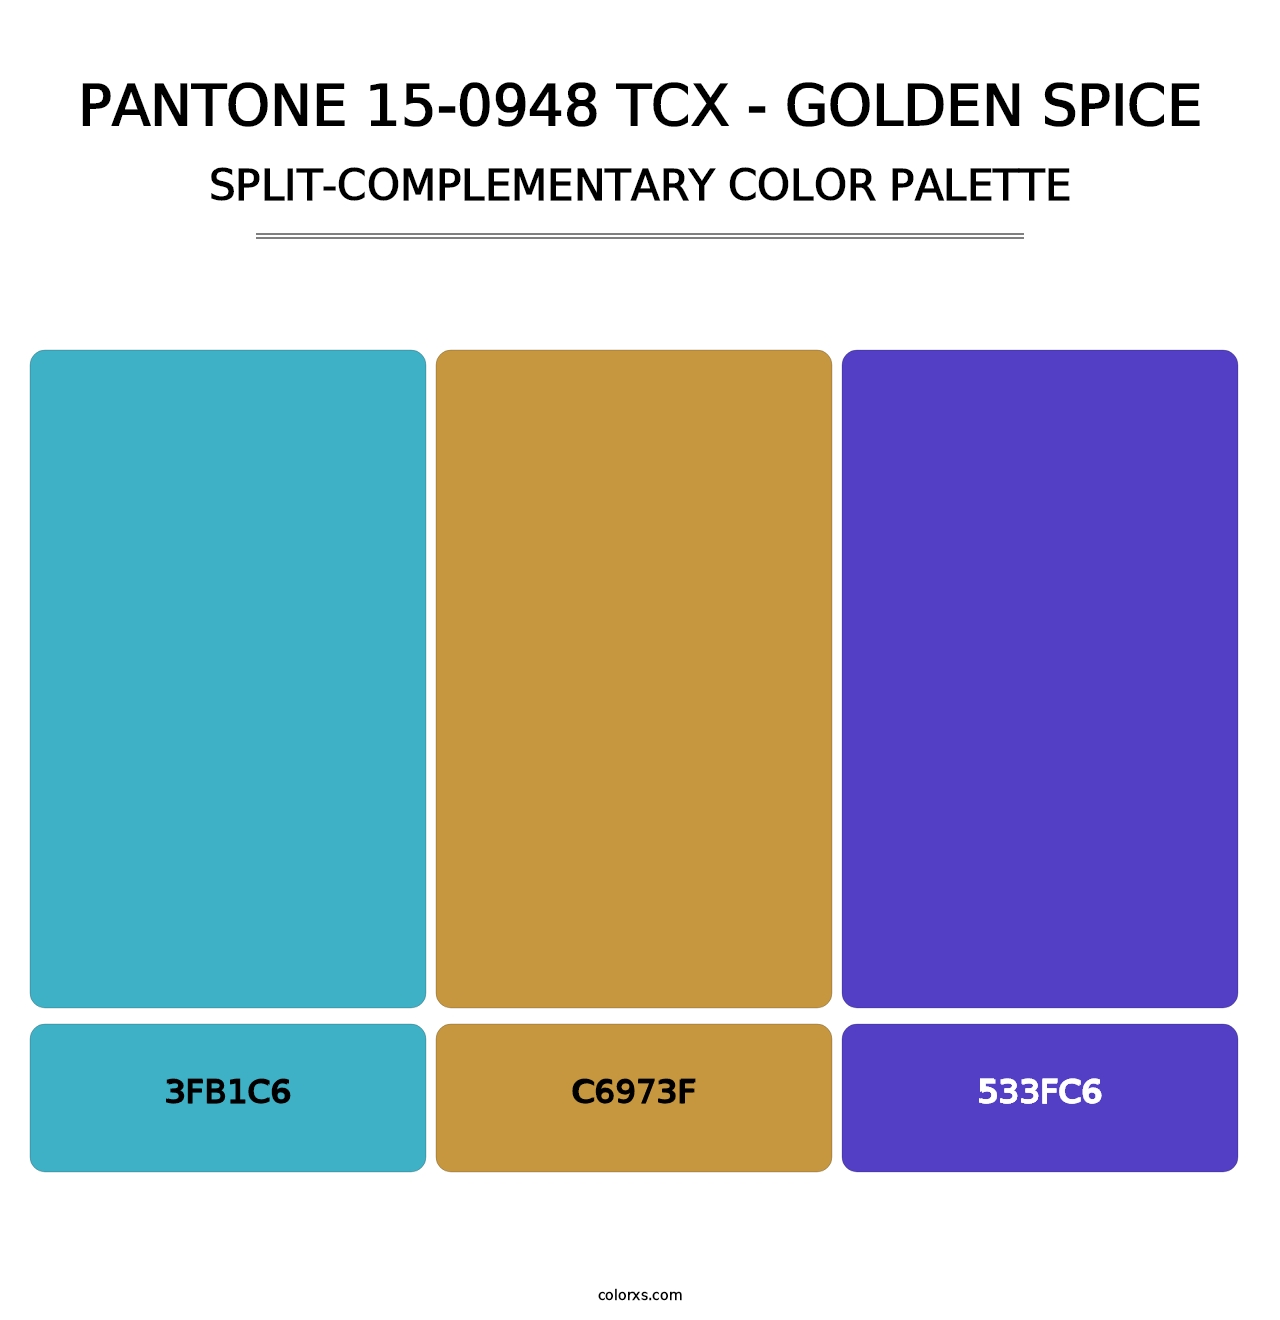 PANTONE 15-0948 TCX - Golden Spice - Split-Complementary Color Palette